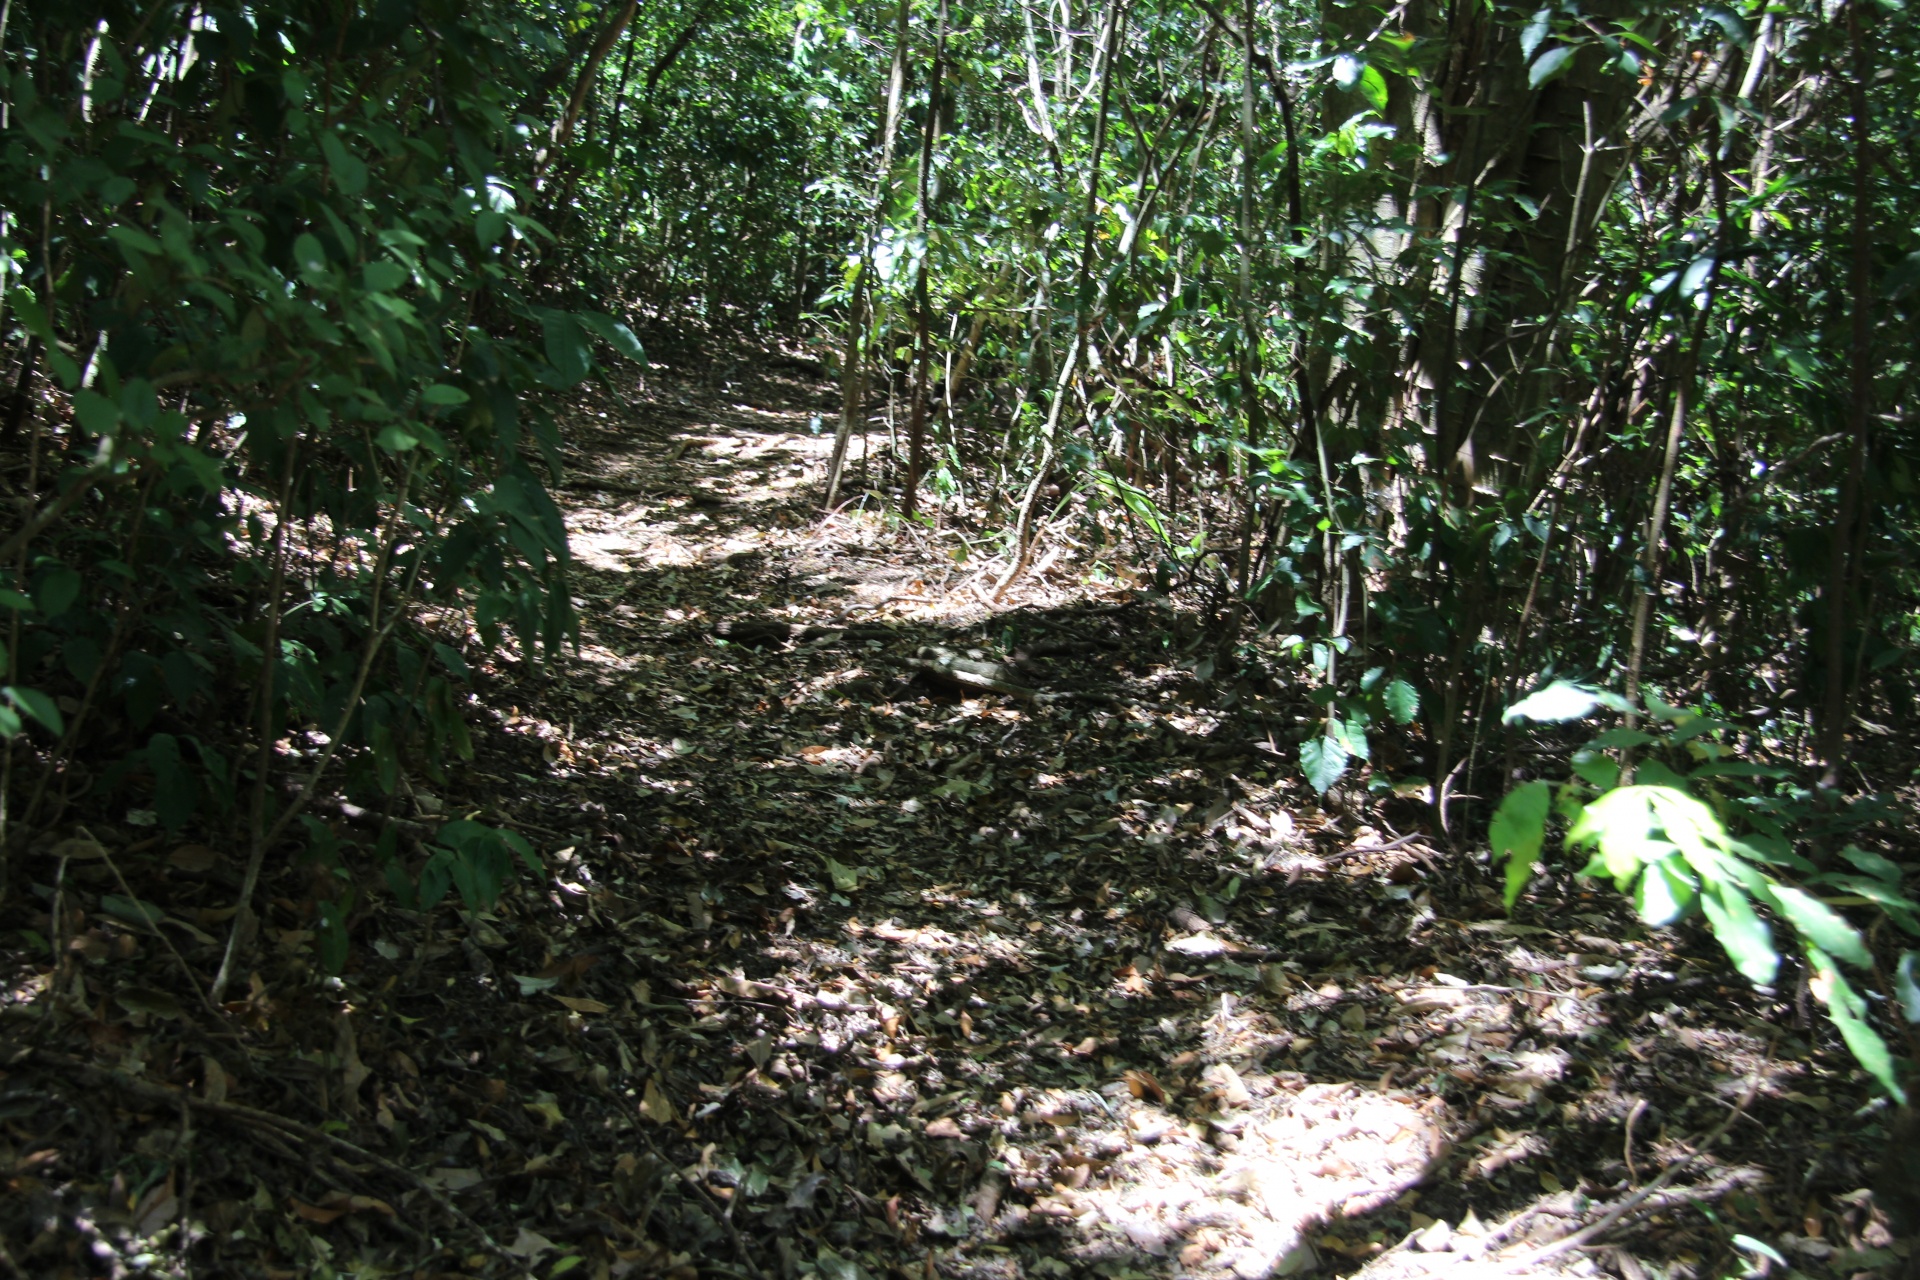 Caminho na selva